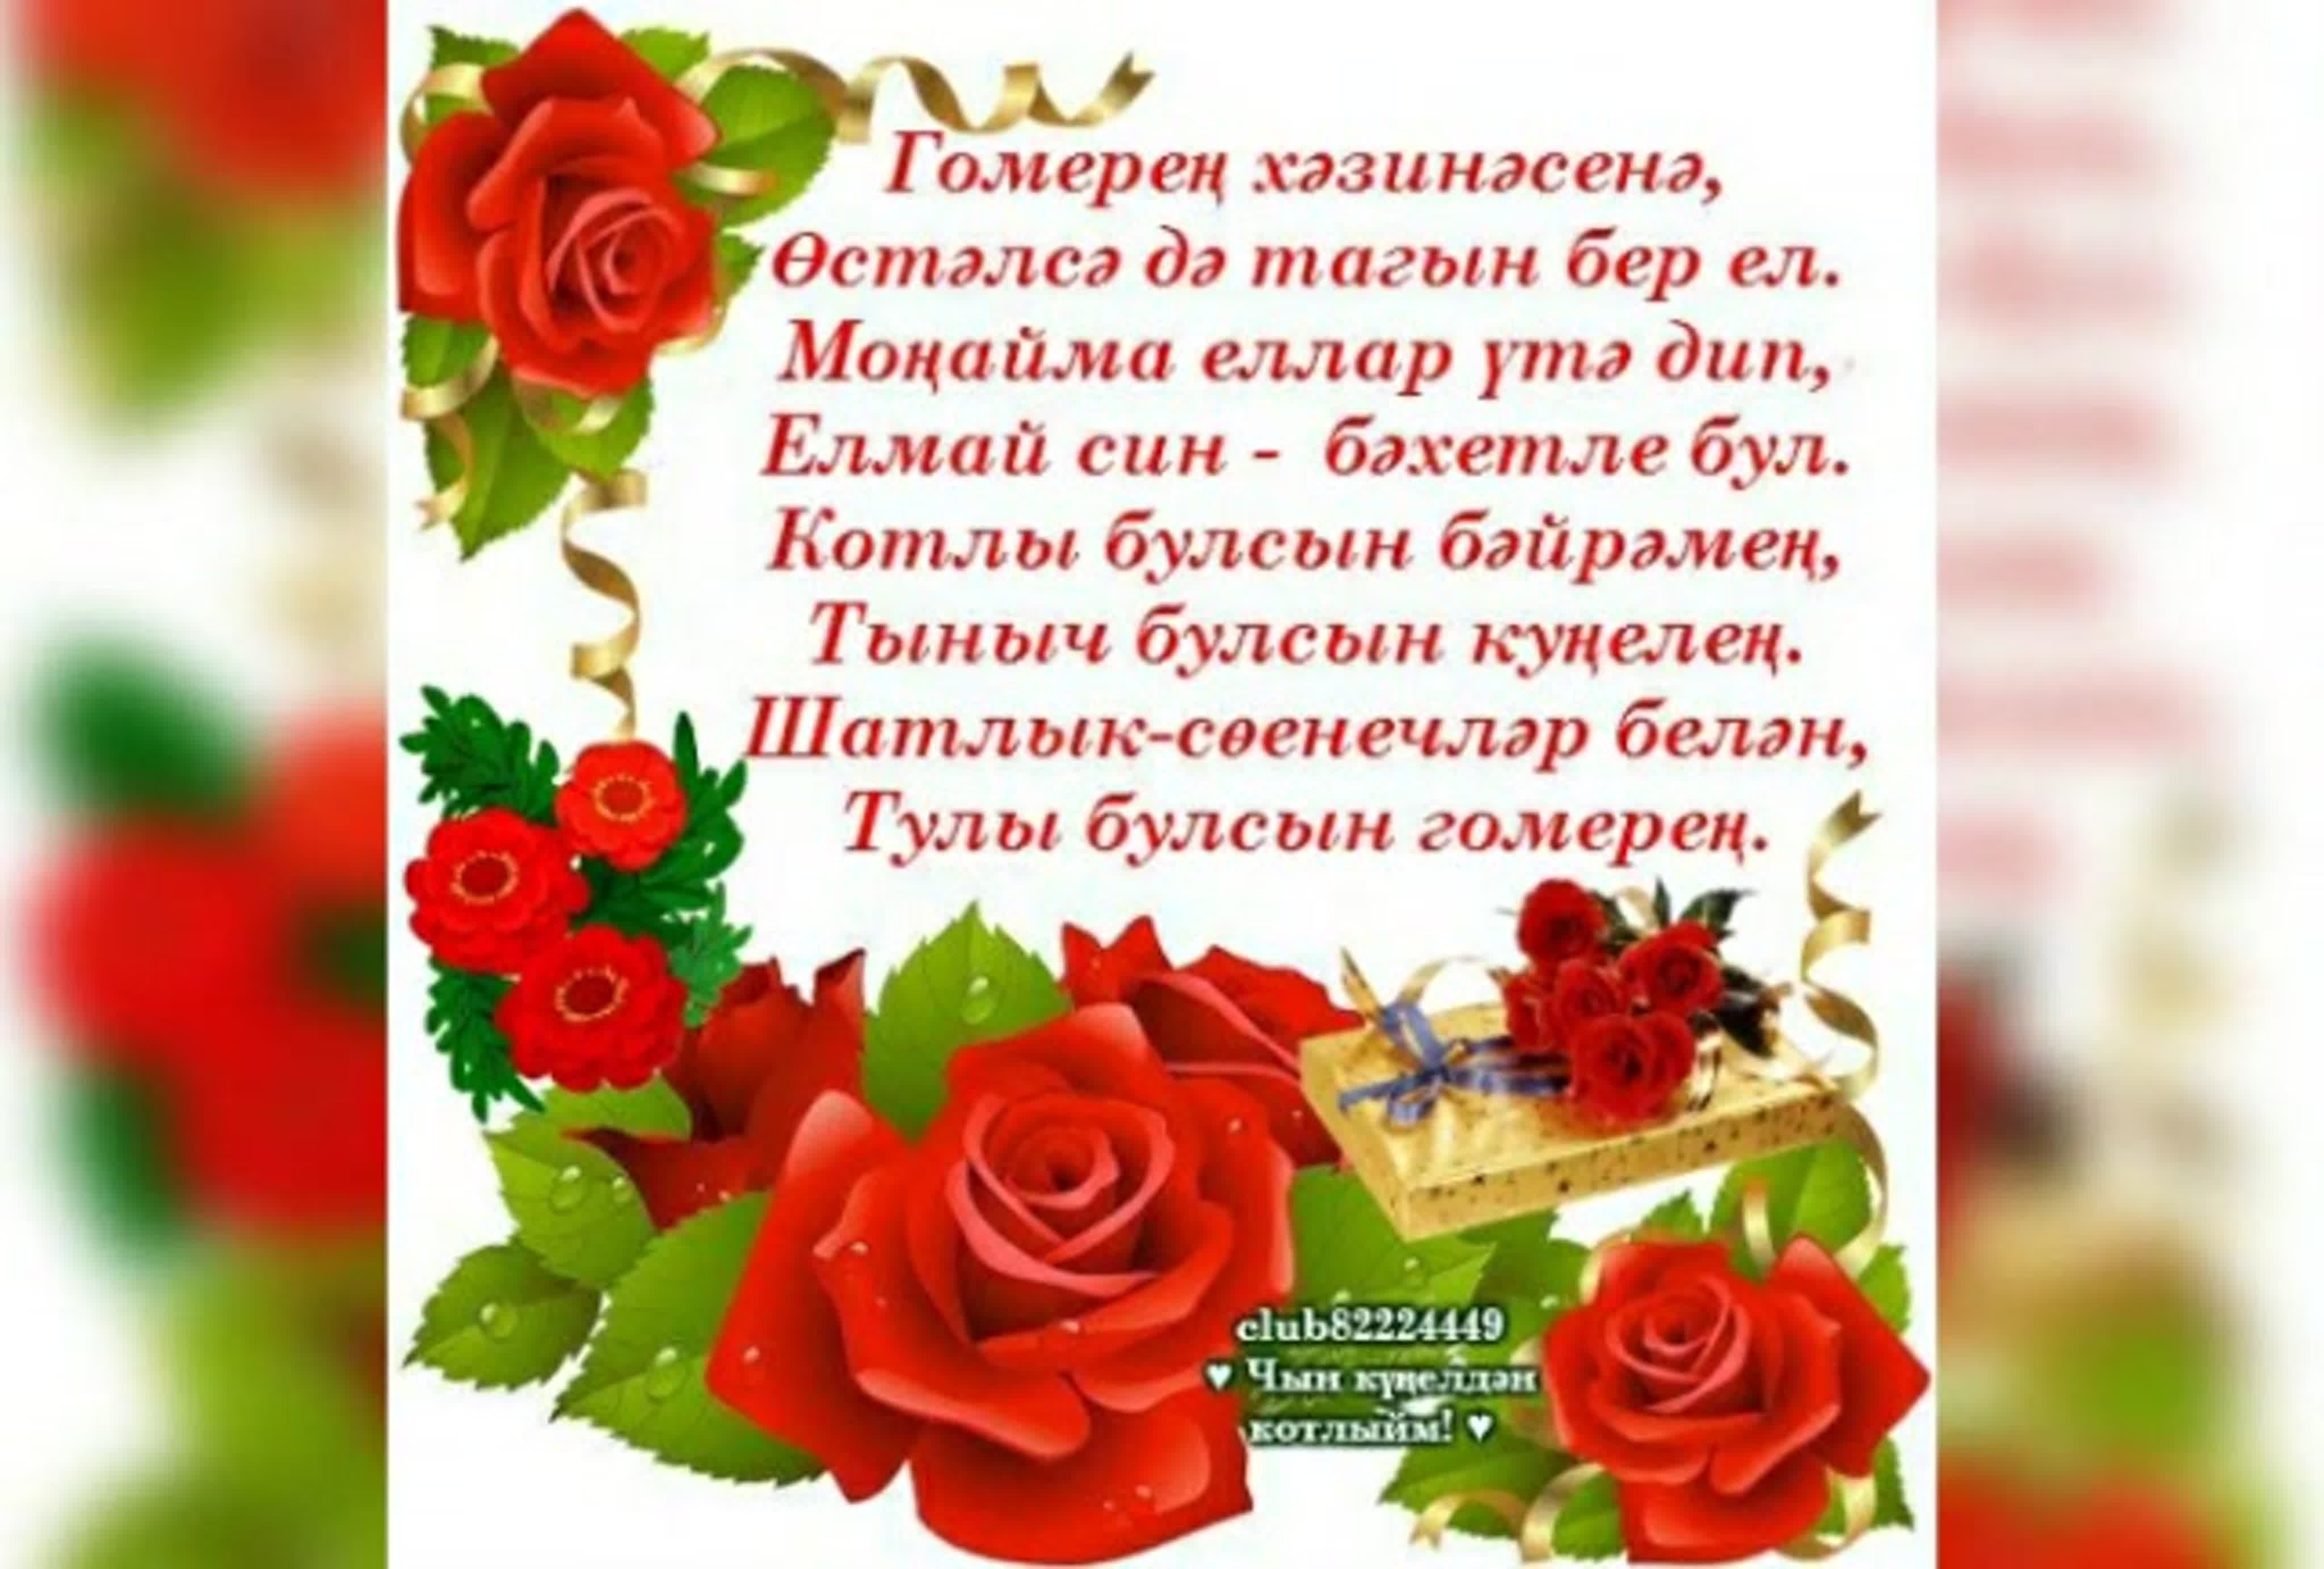 Поздравление на татарском языке подруге. Поздравления с днём рождения на татарском. Поздравления с днём рождения на татарском языке. Поздравления с днём с днём рождения на татарском языке. Пожелания с днём рождения по татарский.